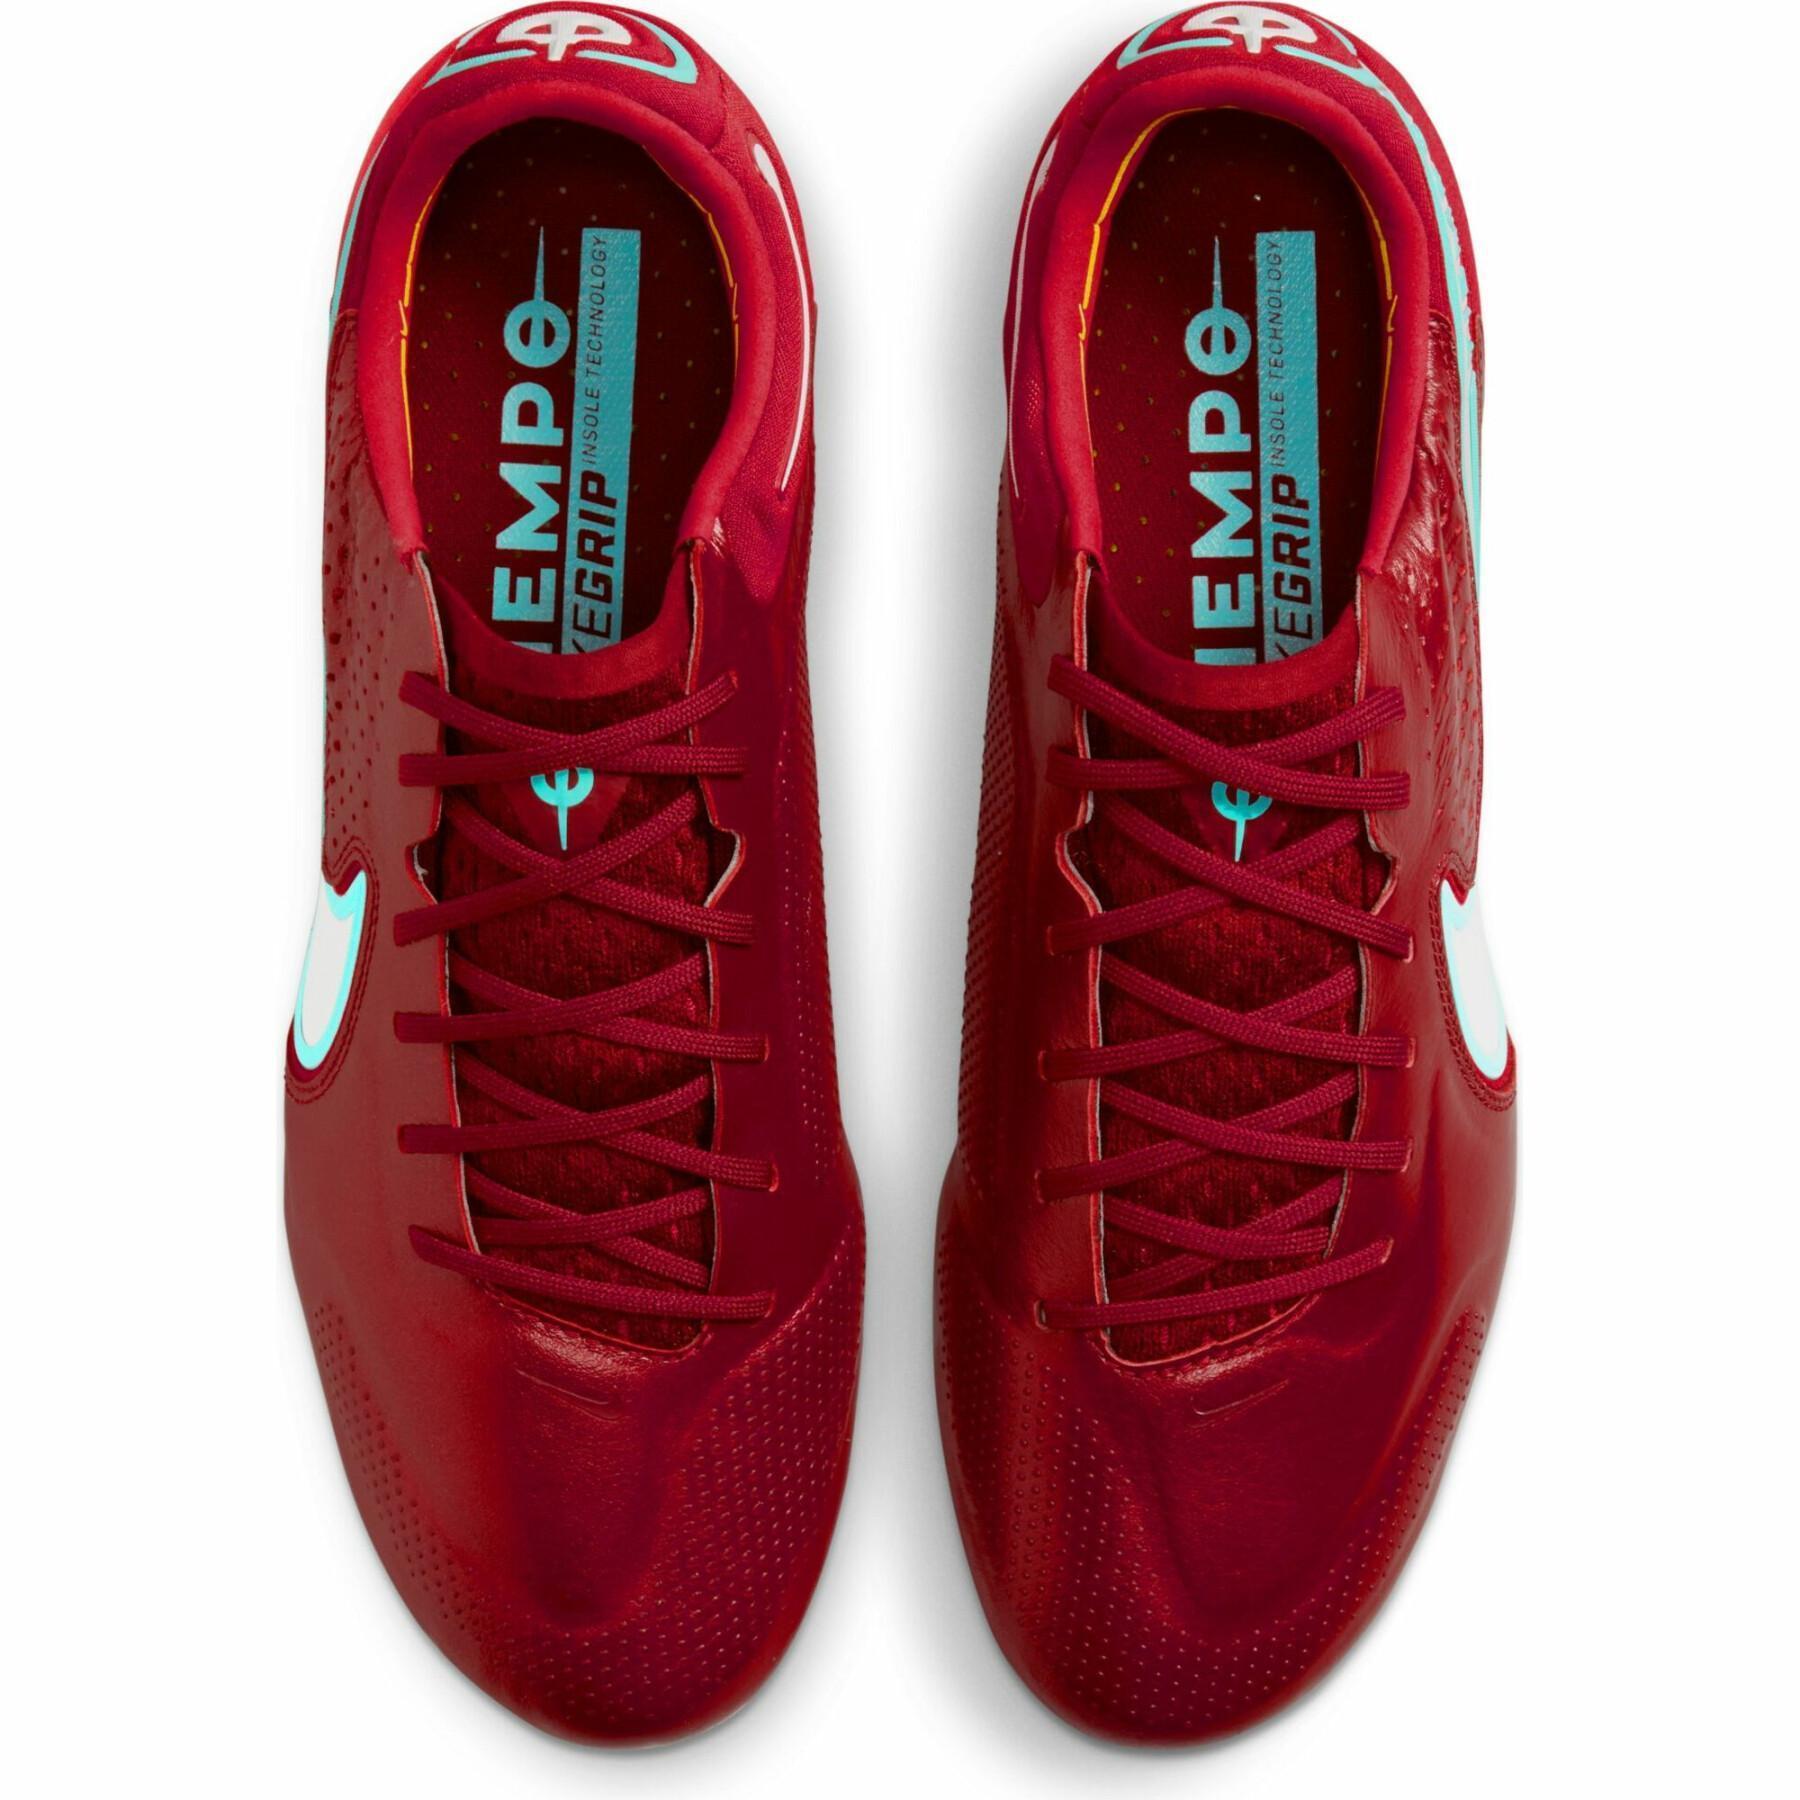 Soccer cleats Nike Tiempo Legend 9 Élite SG-Pro AC- Blueprint Pack